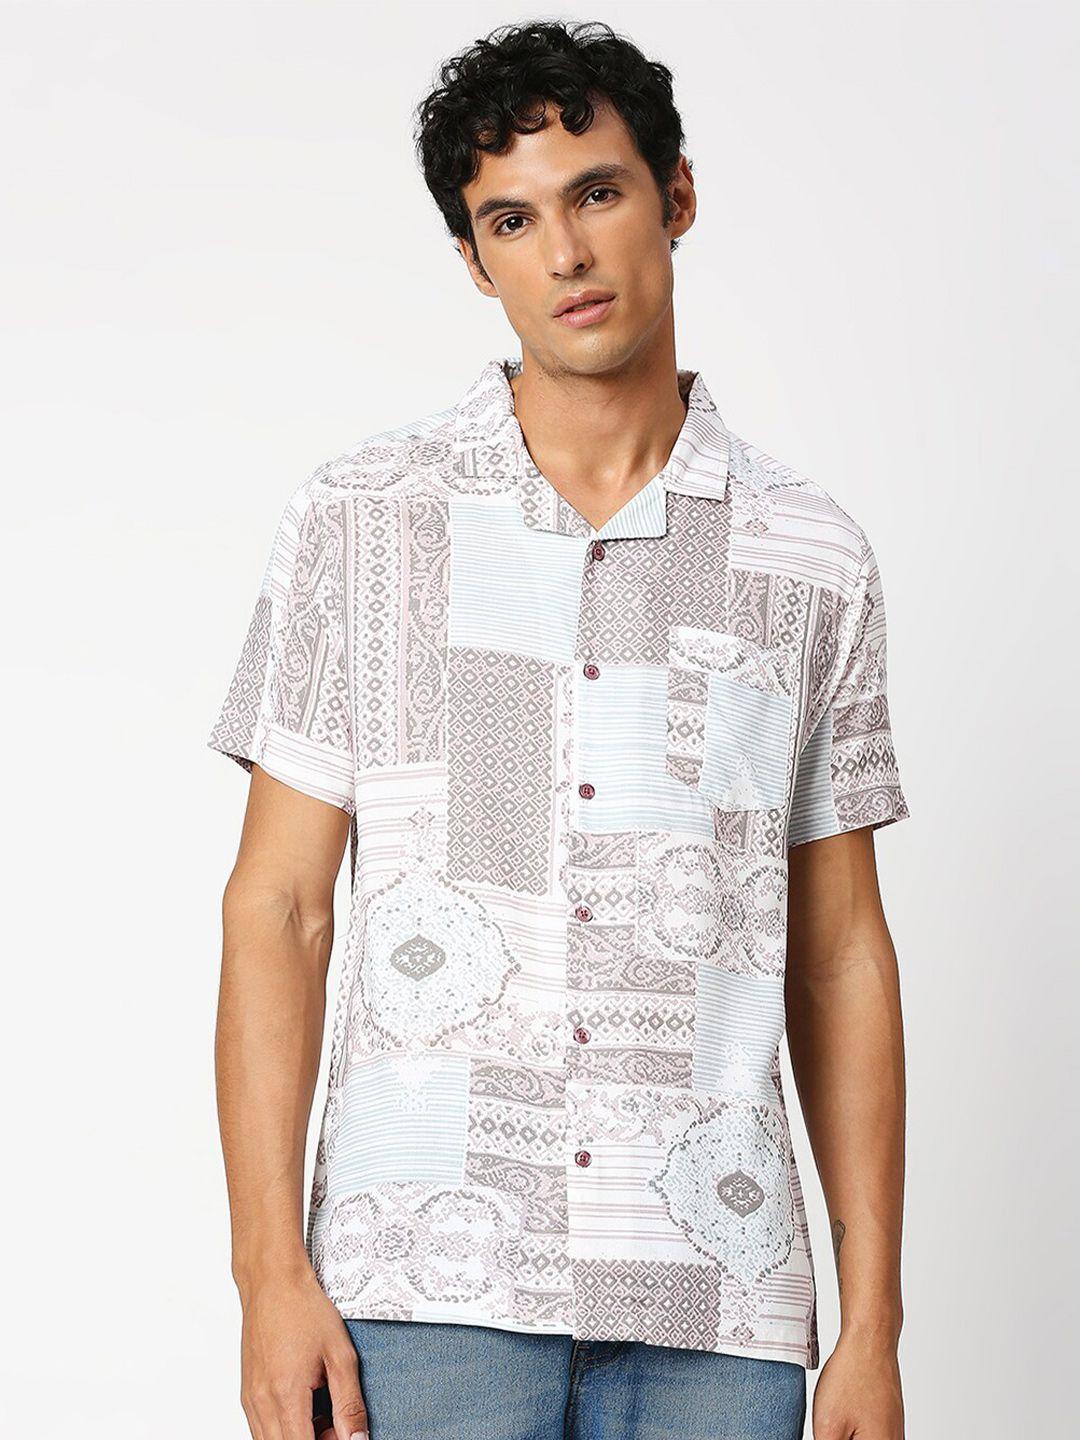 mod ecru ethnic motifs printed opaque casual shirt